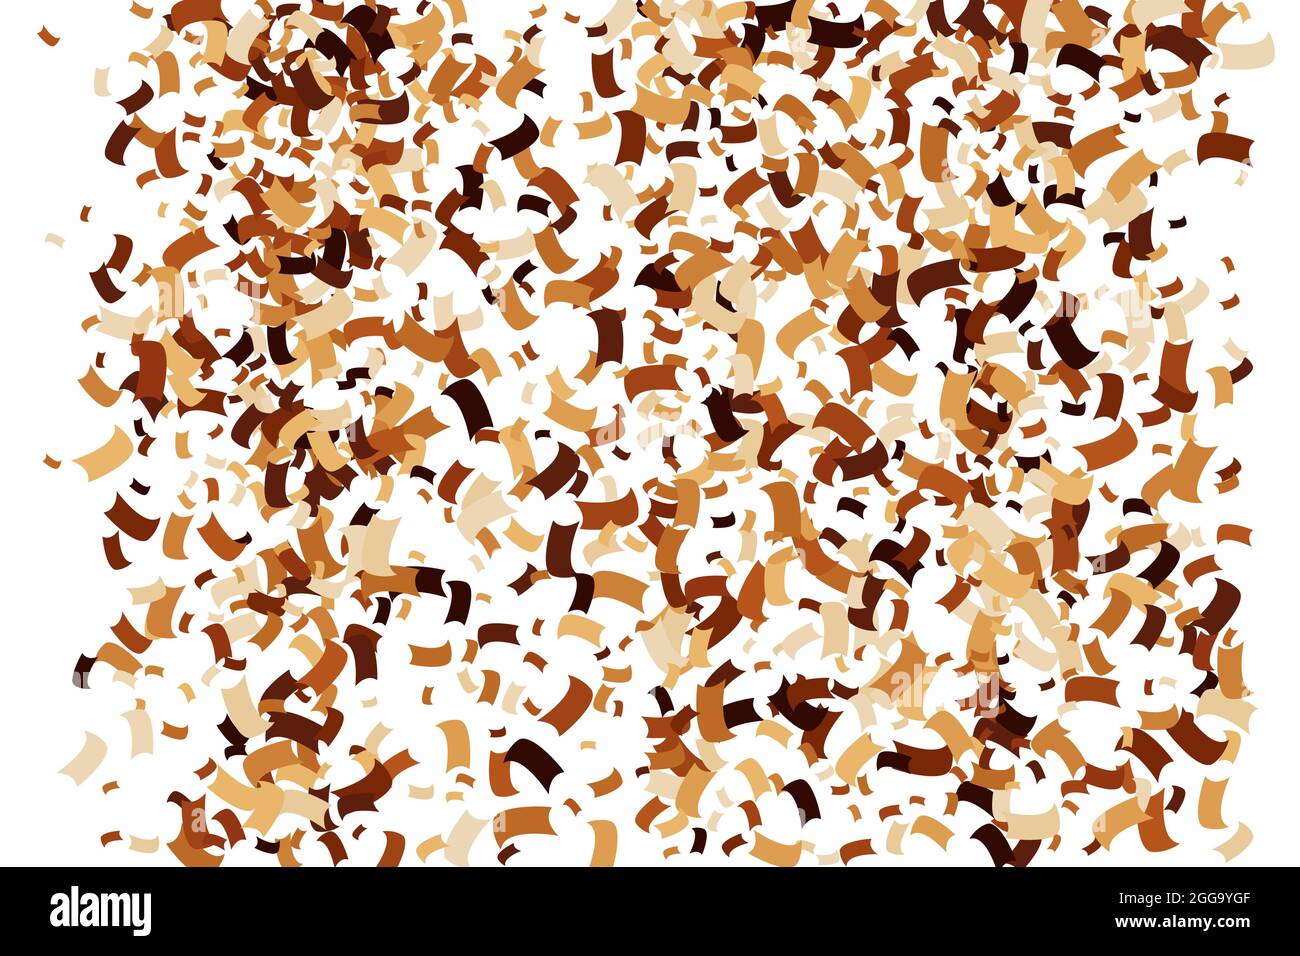 Kaffee Farbe Konfetti isoliert auf weißem Hintergrund. Schokoladentöne Textur. Braune Partikel. Digital Generiertes Bild. Vektorgrafik, EPS 10. Stock Vektor